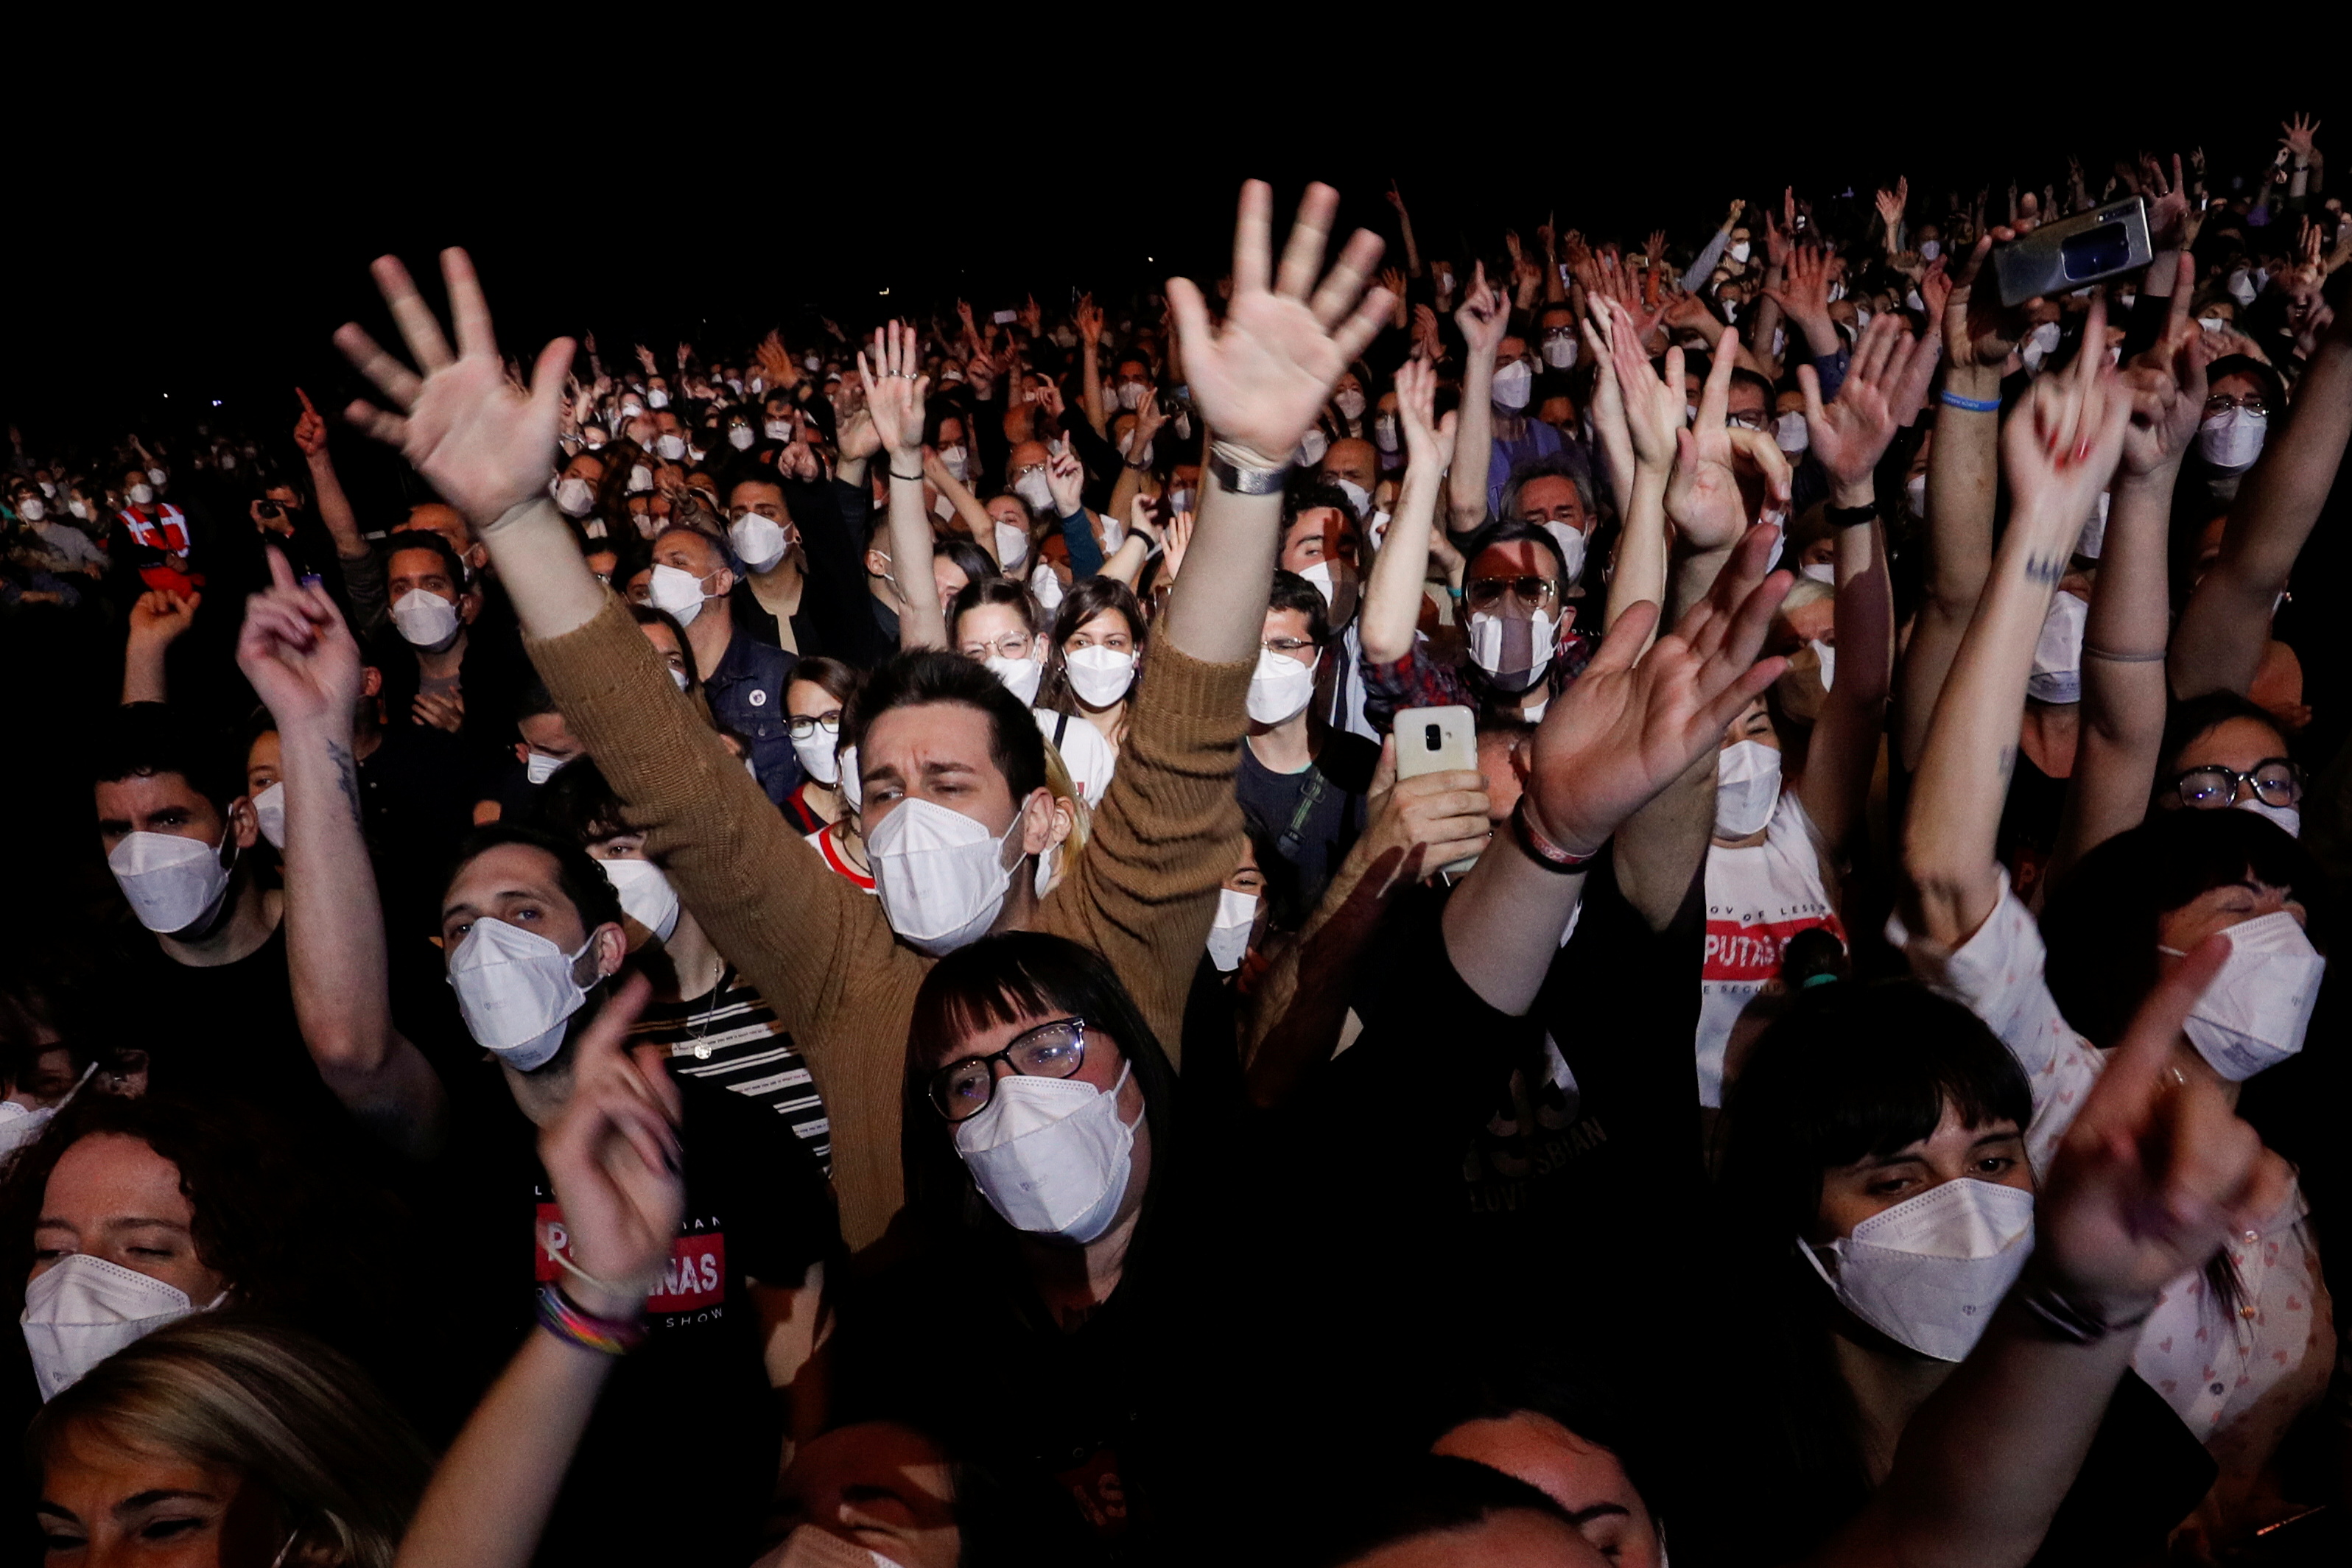 España tuvo su primer concierto masivo en pandemia sin distanciamiento social (FOTOS)